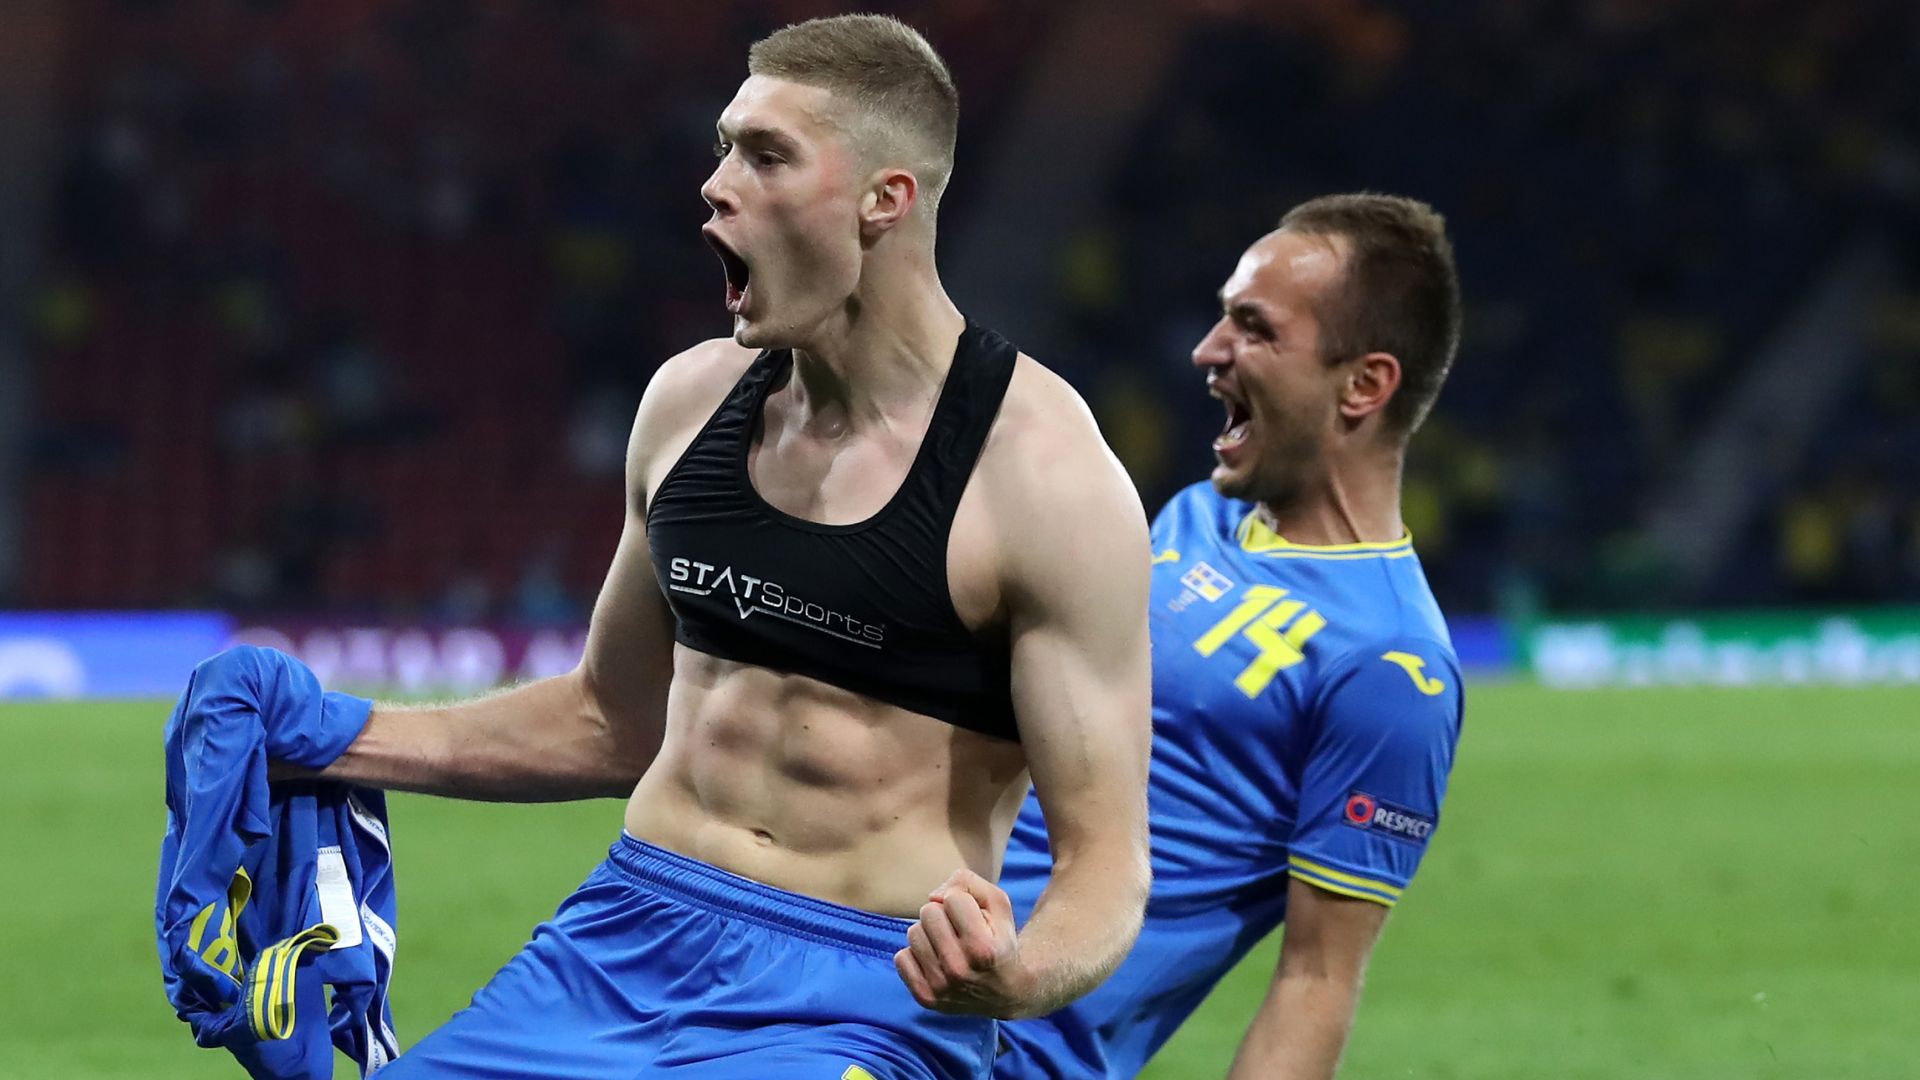 Ukraine stun Sweden to set up England clash